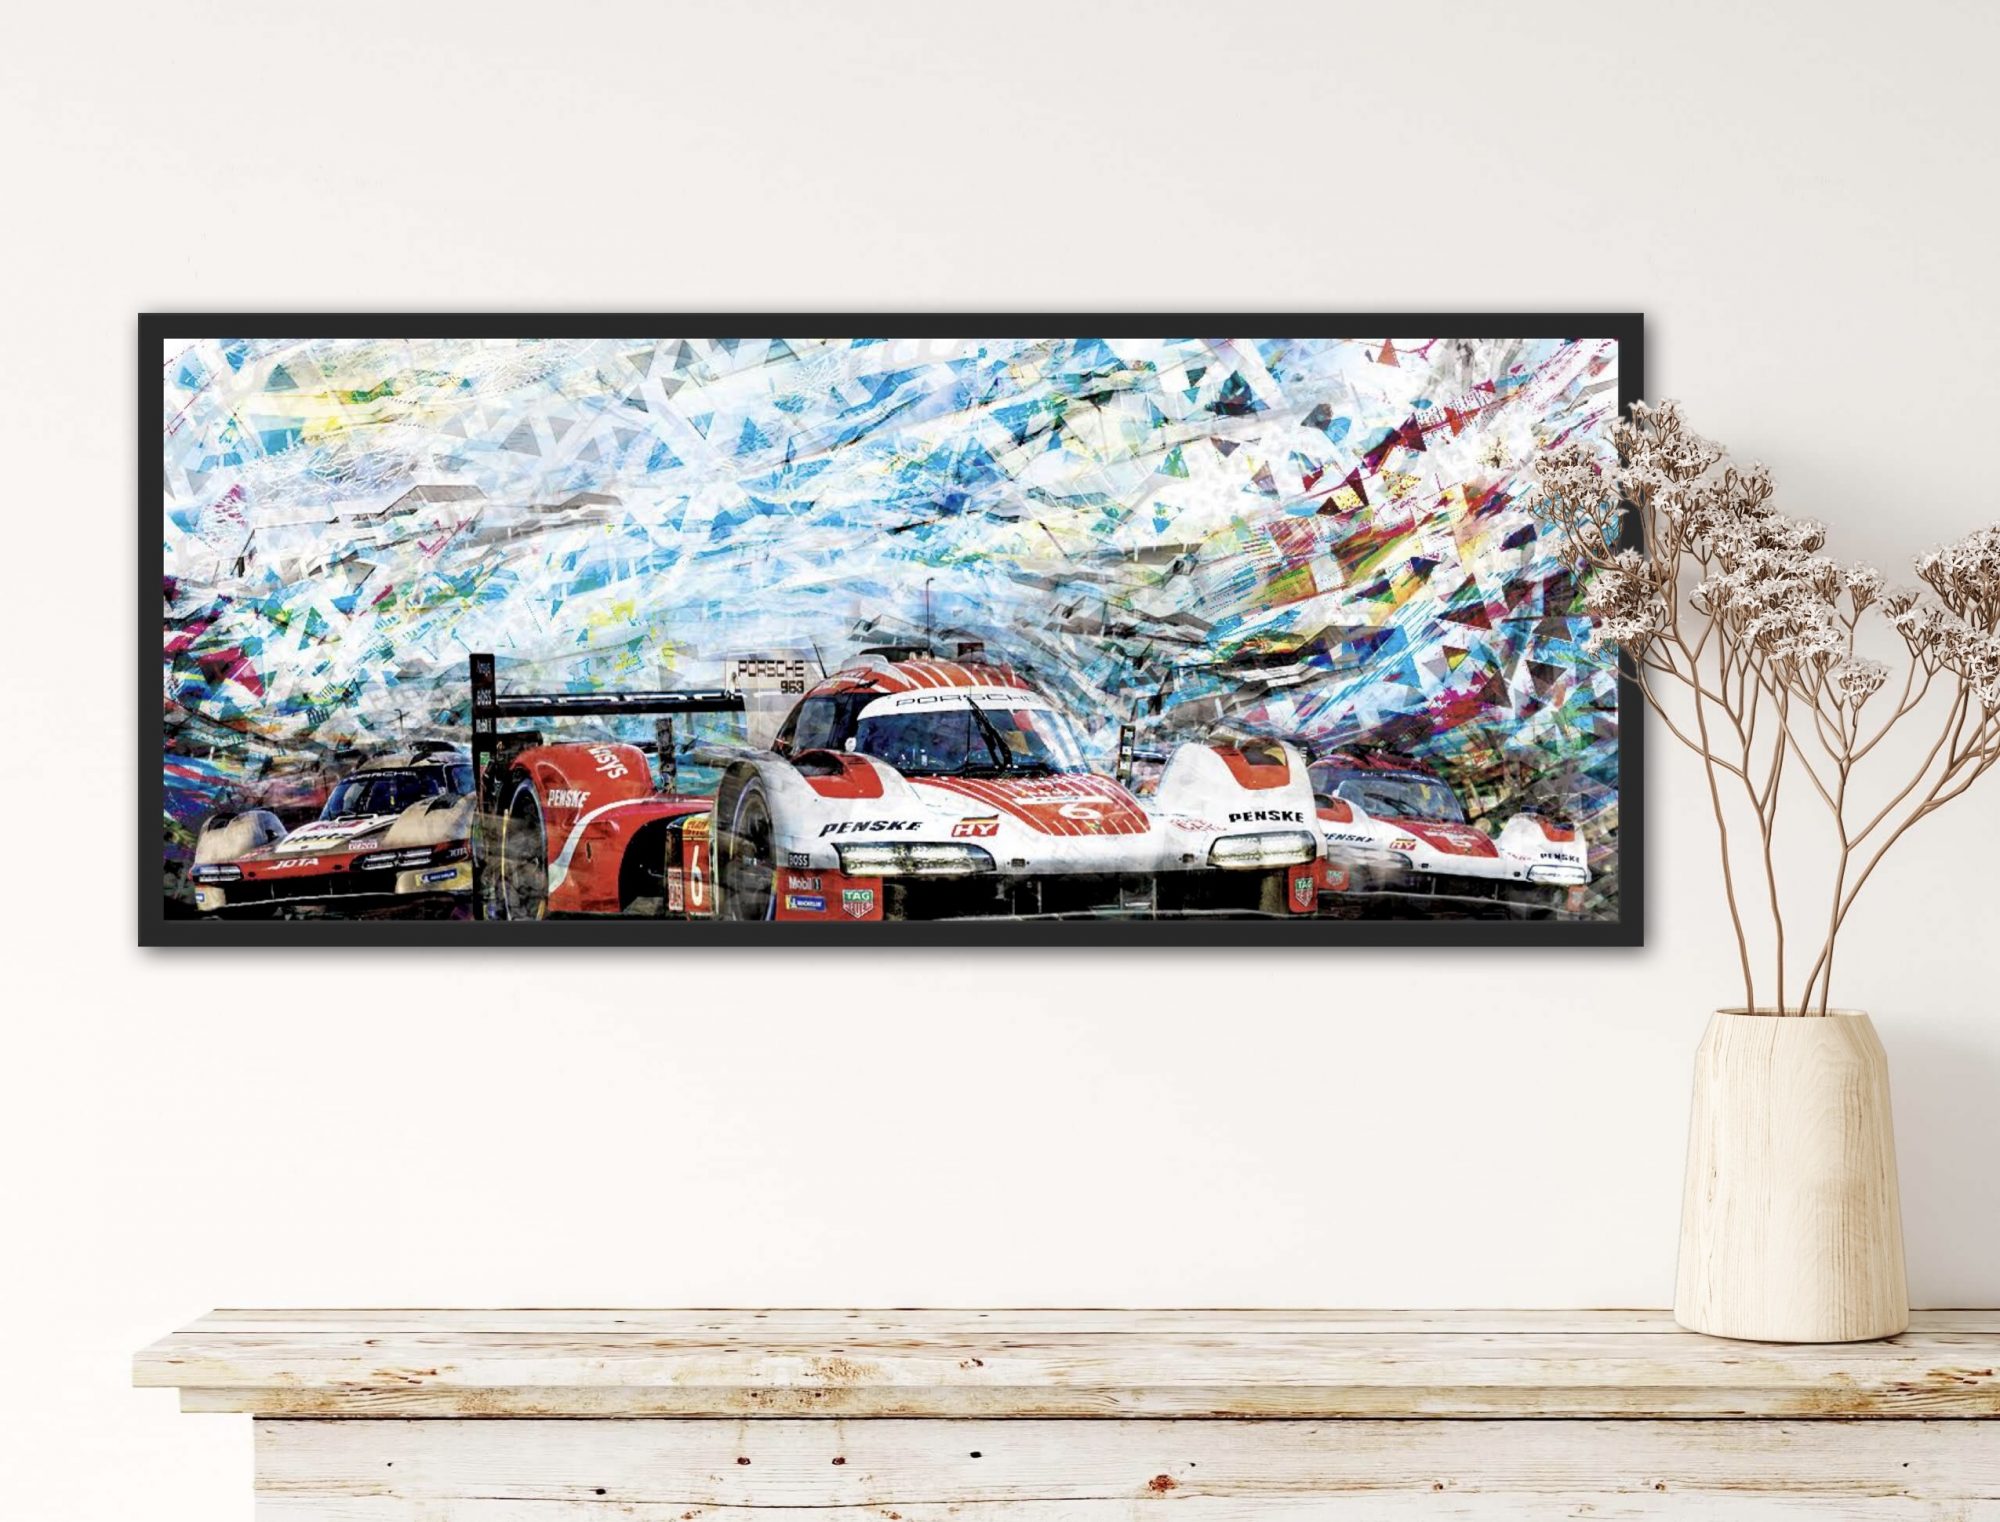 Oeuvre Porsche triplé Qatar - Caroline LLONG - artiste officelle des 24h du Mans - tableau automobile - art contemporain